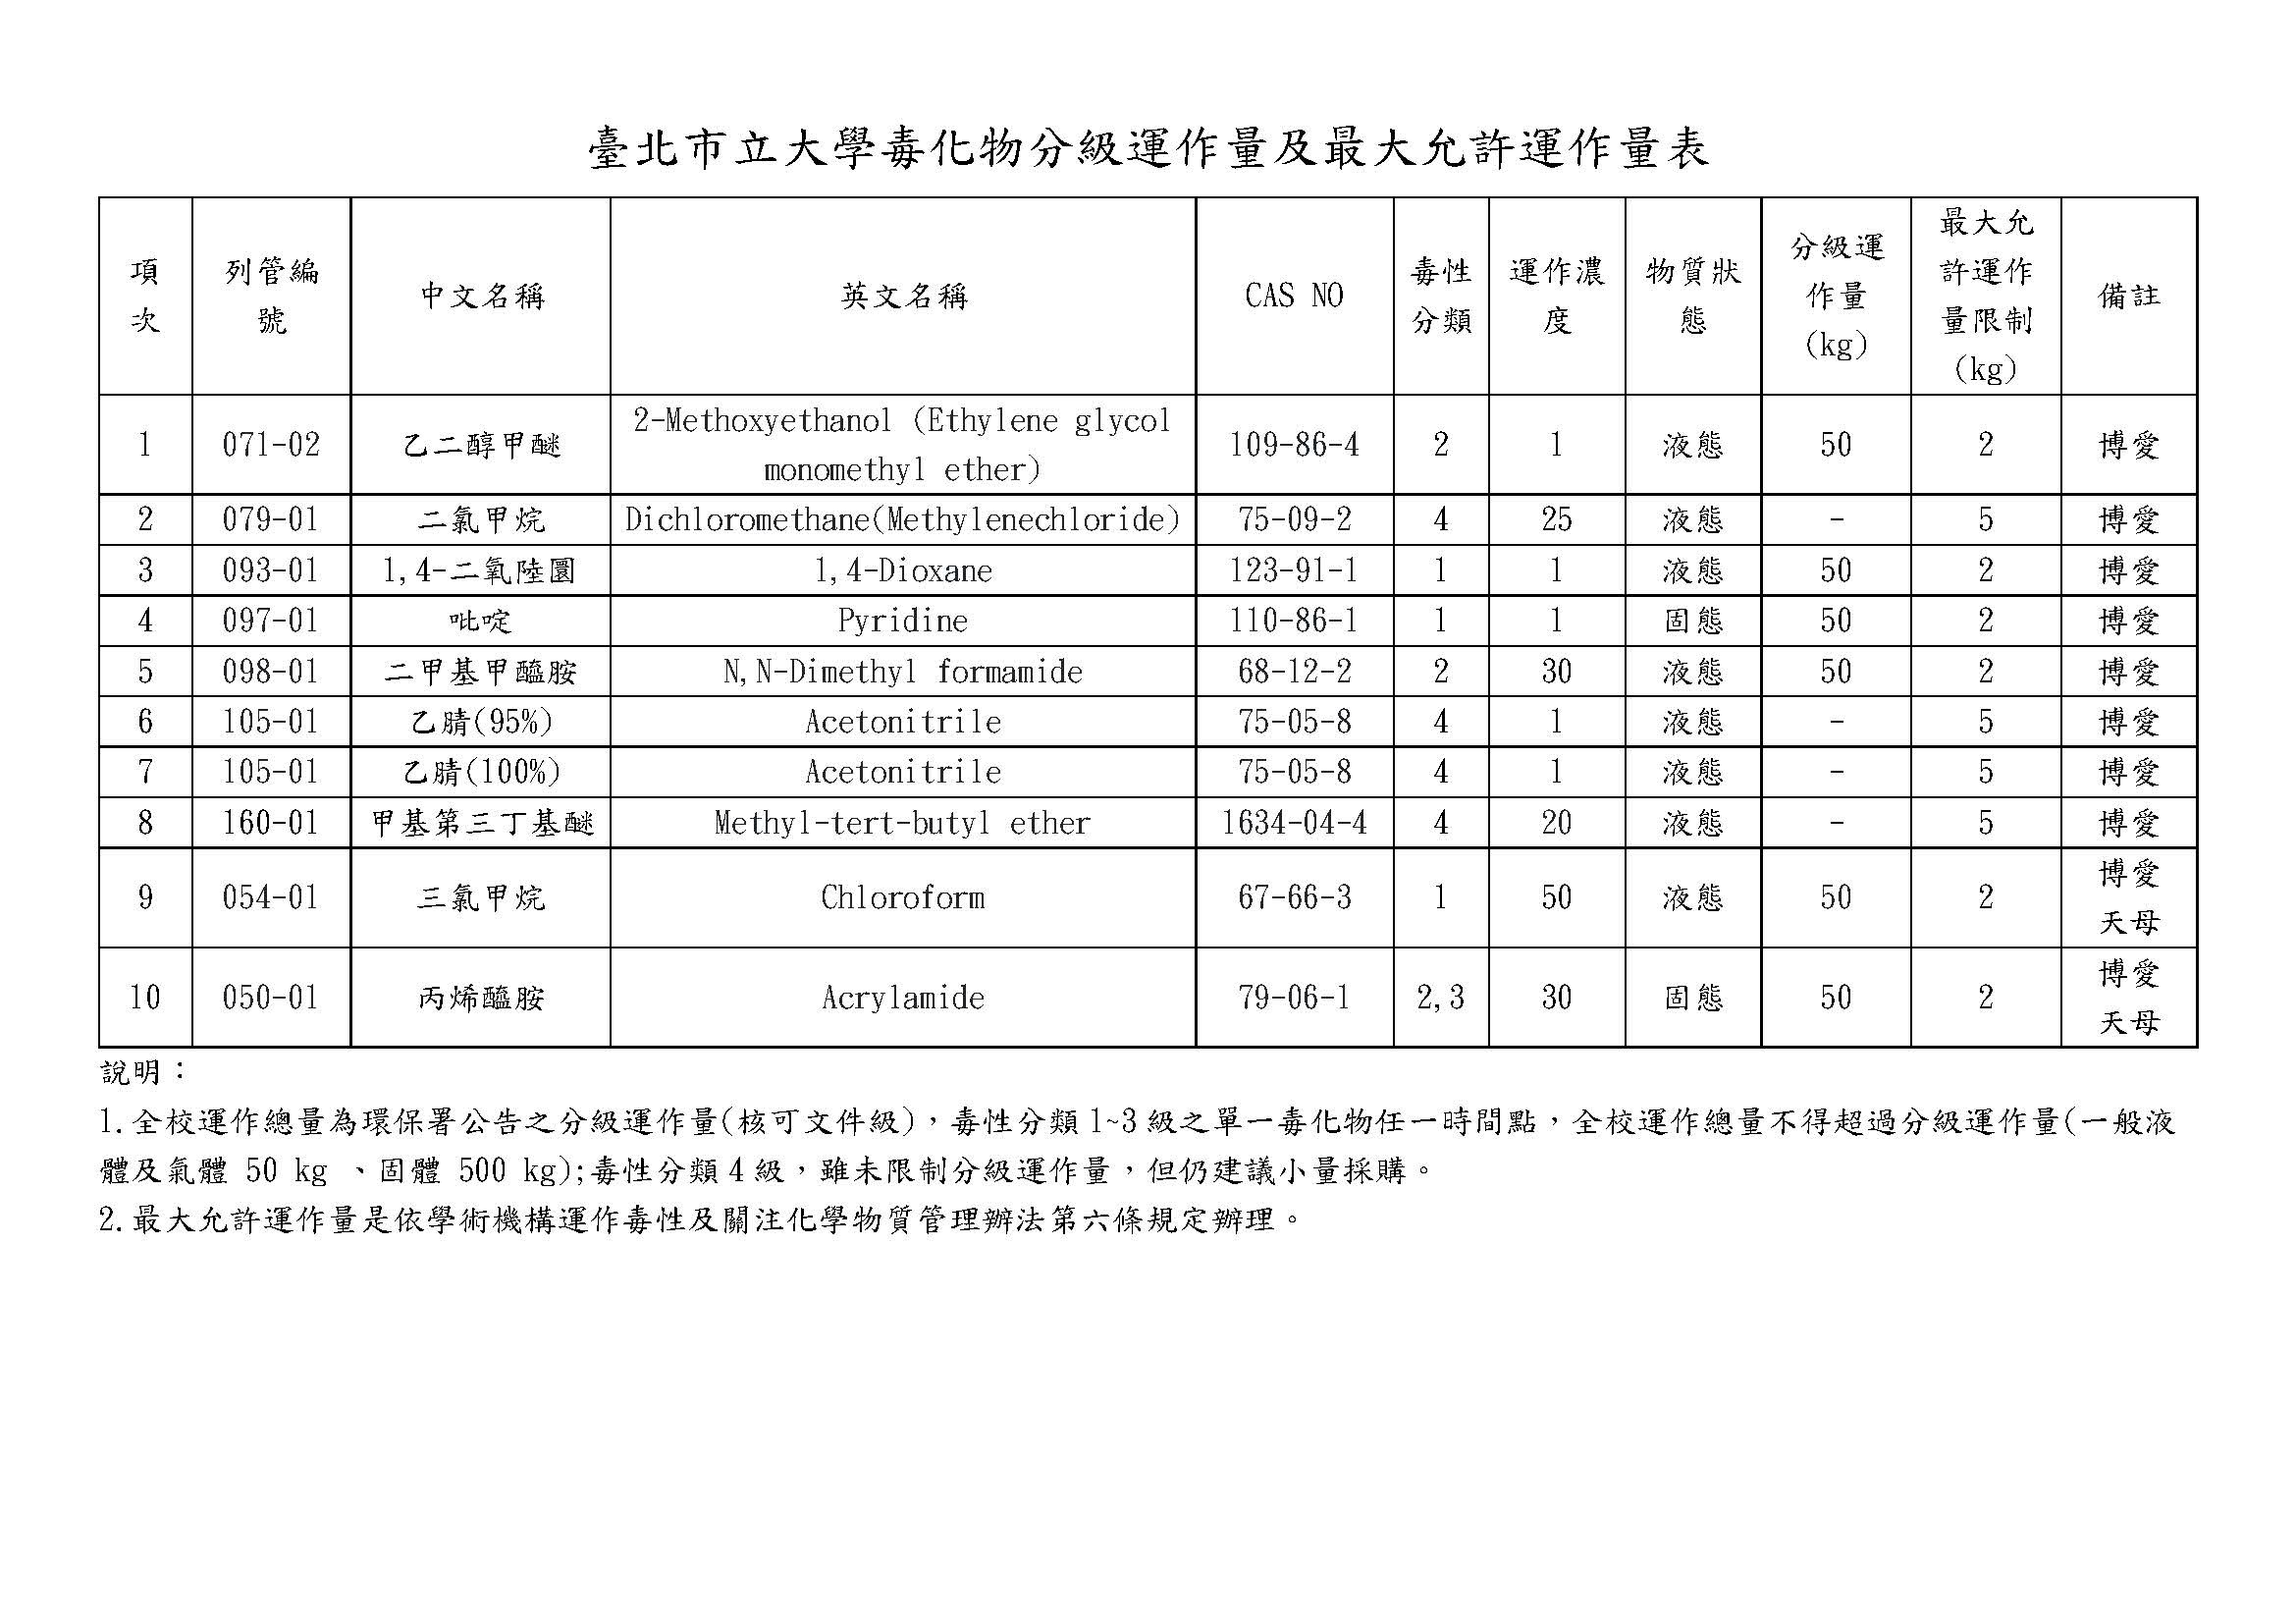 臺北市立大學毒化物分級運作量及最大允許運作量表